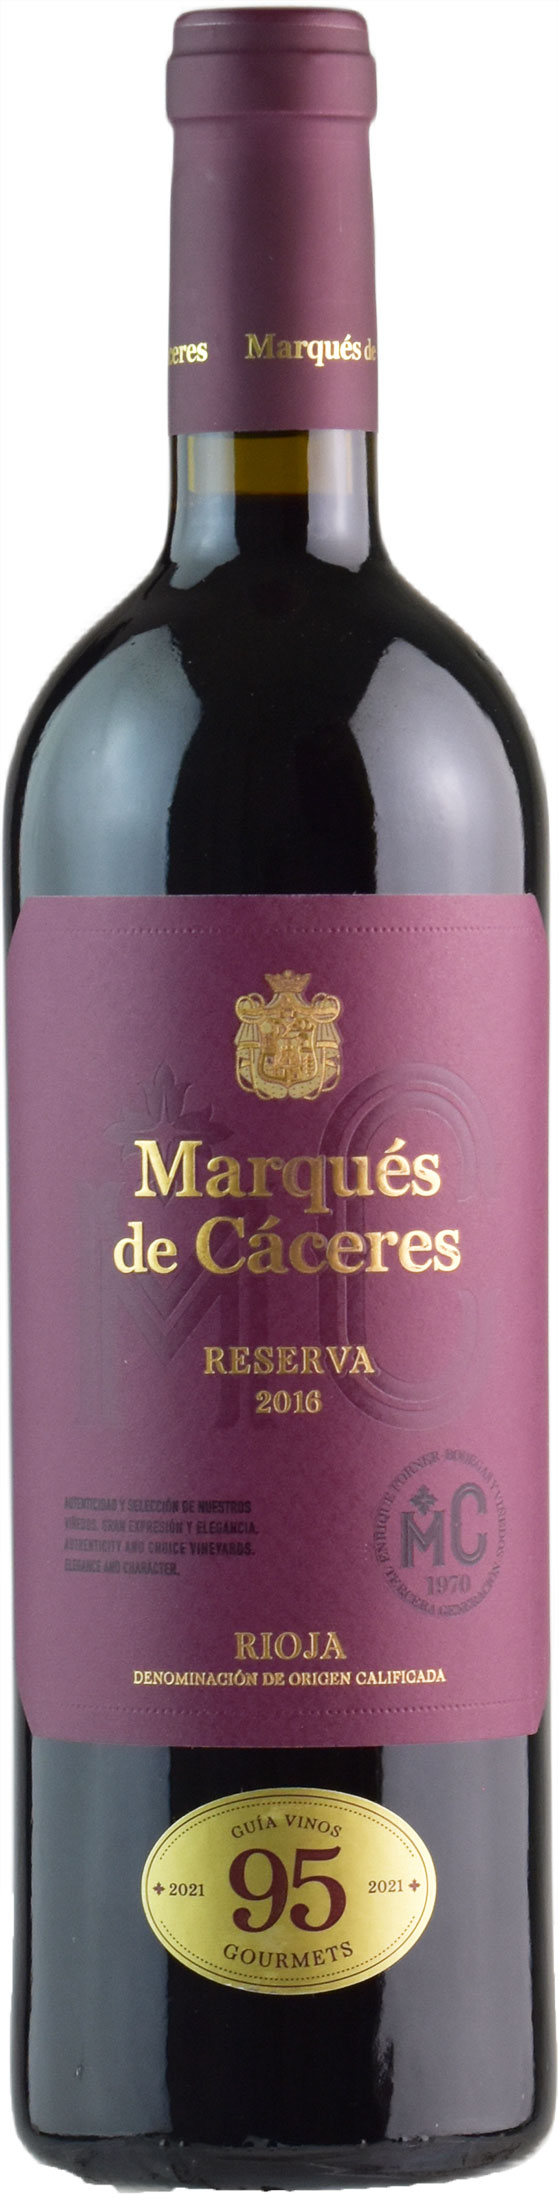 Marques De Caceres Rioja Reserva